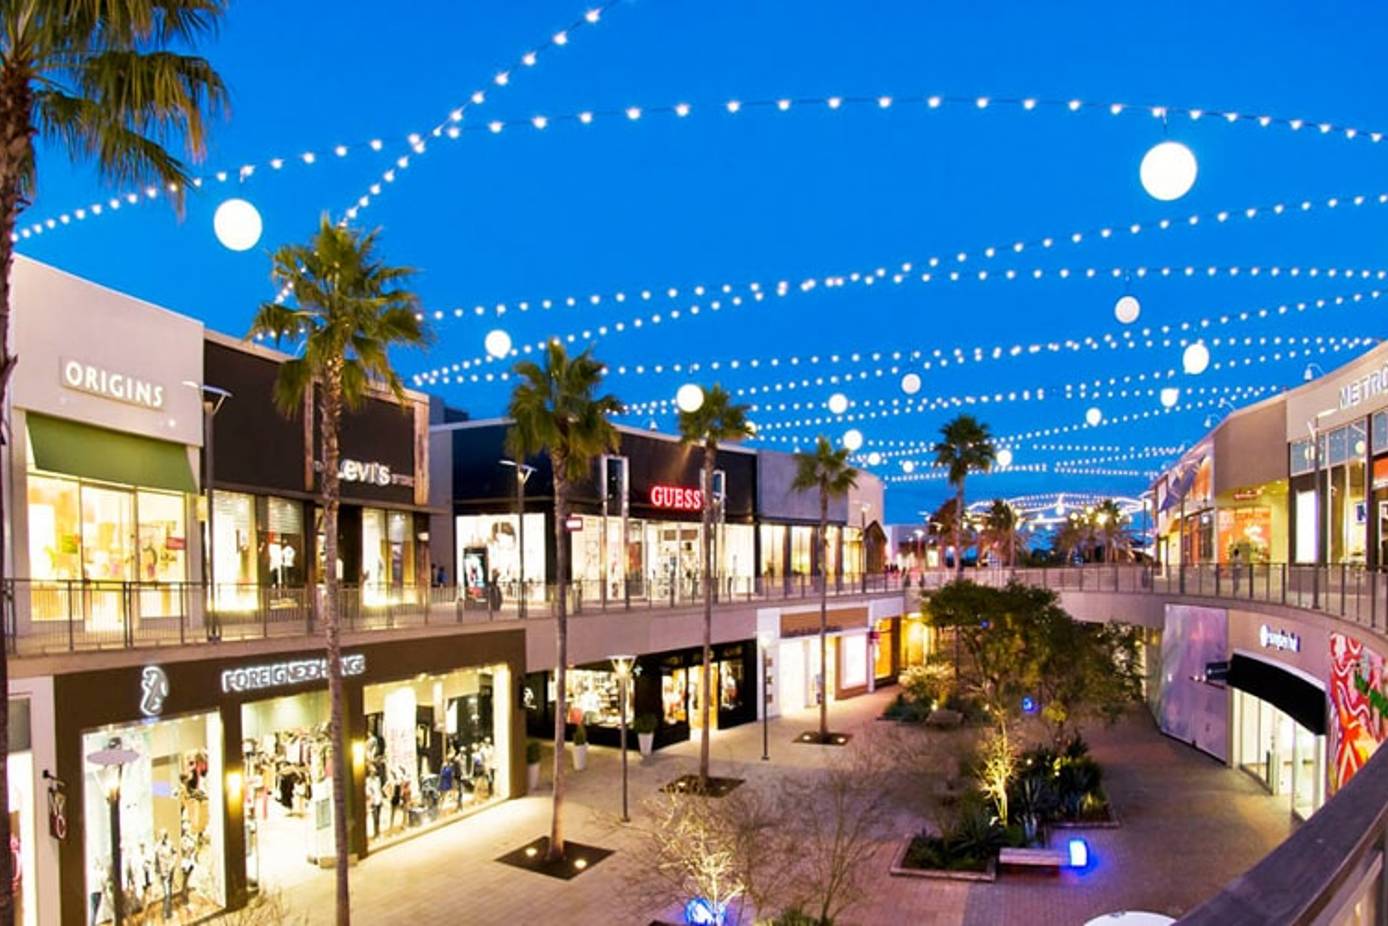 Del Amo Fashion Mall - Phase II in Torrance, CA (Del Amo Fashion